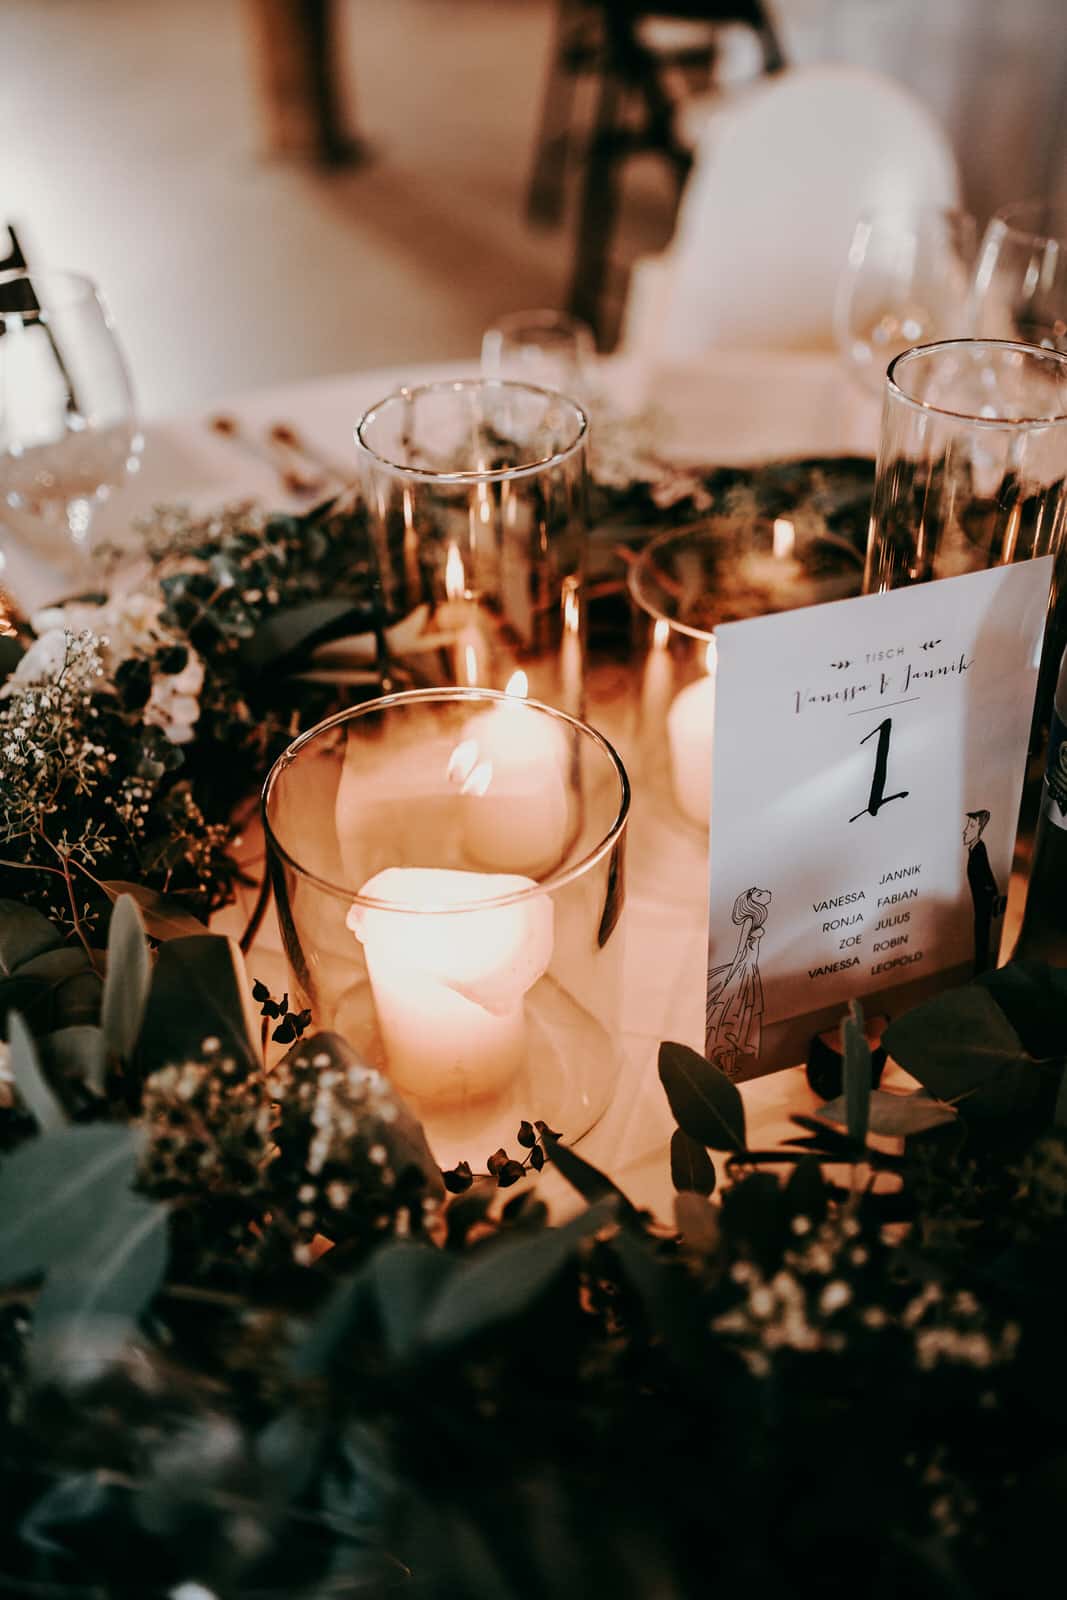 Als Hochzeitsfotografen lieben wir Details.Zu sehen ist ein Ausschnitt die Tischdekoration einer Hochzeitsfeier: weiße Stumpferen in einem edlen Glas, das Kerzenlicht flackert und gibt dem danebenliegenden Eukalyptus einen besonderen Farbton. Die Tischkarte zeigt die Tischnummer an und die Namen der Hochzeitsgäste, welche sich an diesem Tisch einfinden sollen.